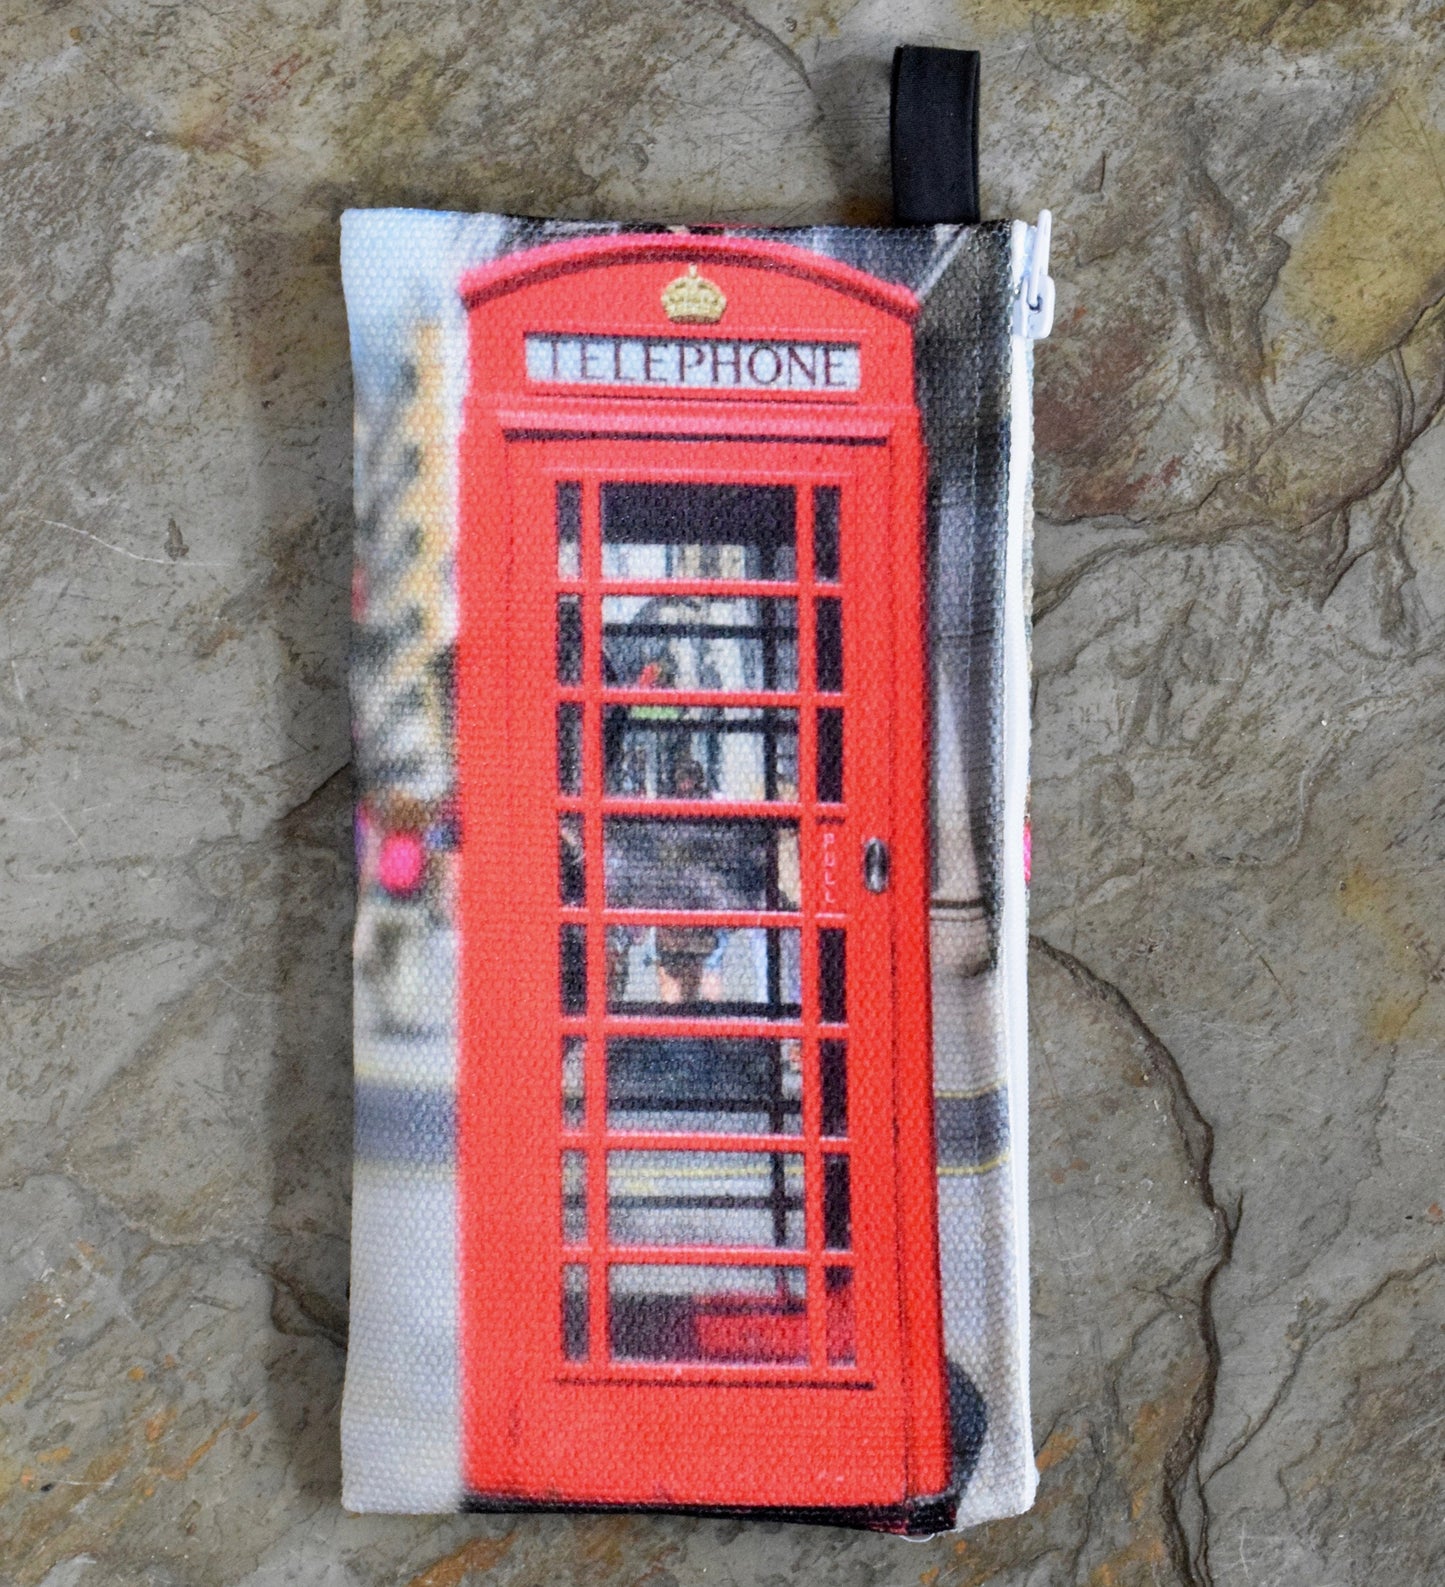 London Makeup Bag - Small Makeup Bag of a London Telephone Booth